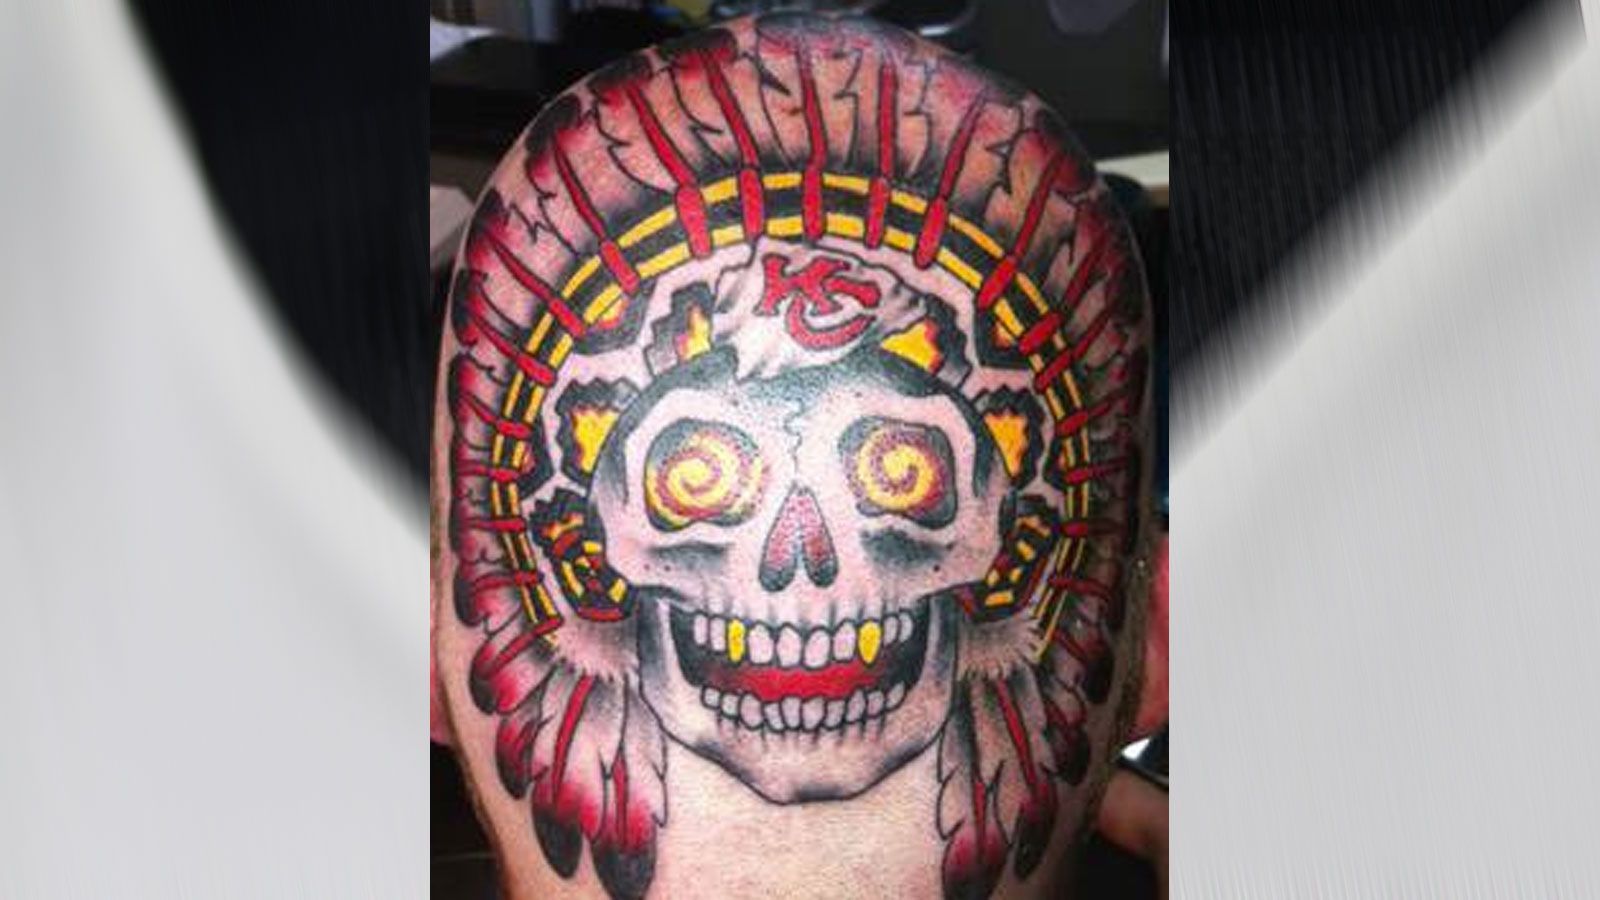 
                <strong>Brennender Schädel mit Chiefs-Touch</strong><br>
                Dieses Tattoo ziert den Hinterkopf eines Fans der Kansas City Chiefs. Und es ist wohl nicht einfach aus einer Laune heraus entsprungen. Denn der Stadtname Kansas geht auf den Indianerstamm "Kansa" zurück. Was bietet sich also besser an für dieses verrückte Tattoo als ein Indianerkopf?
              